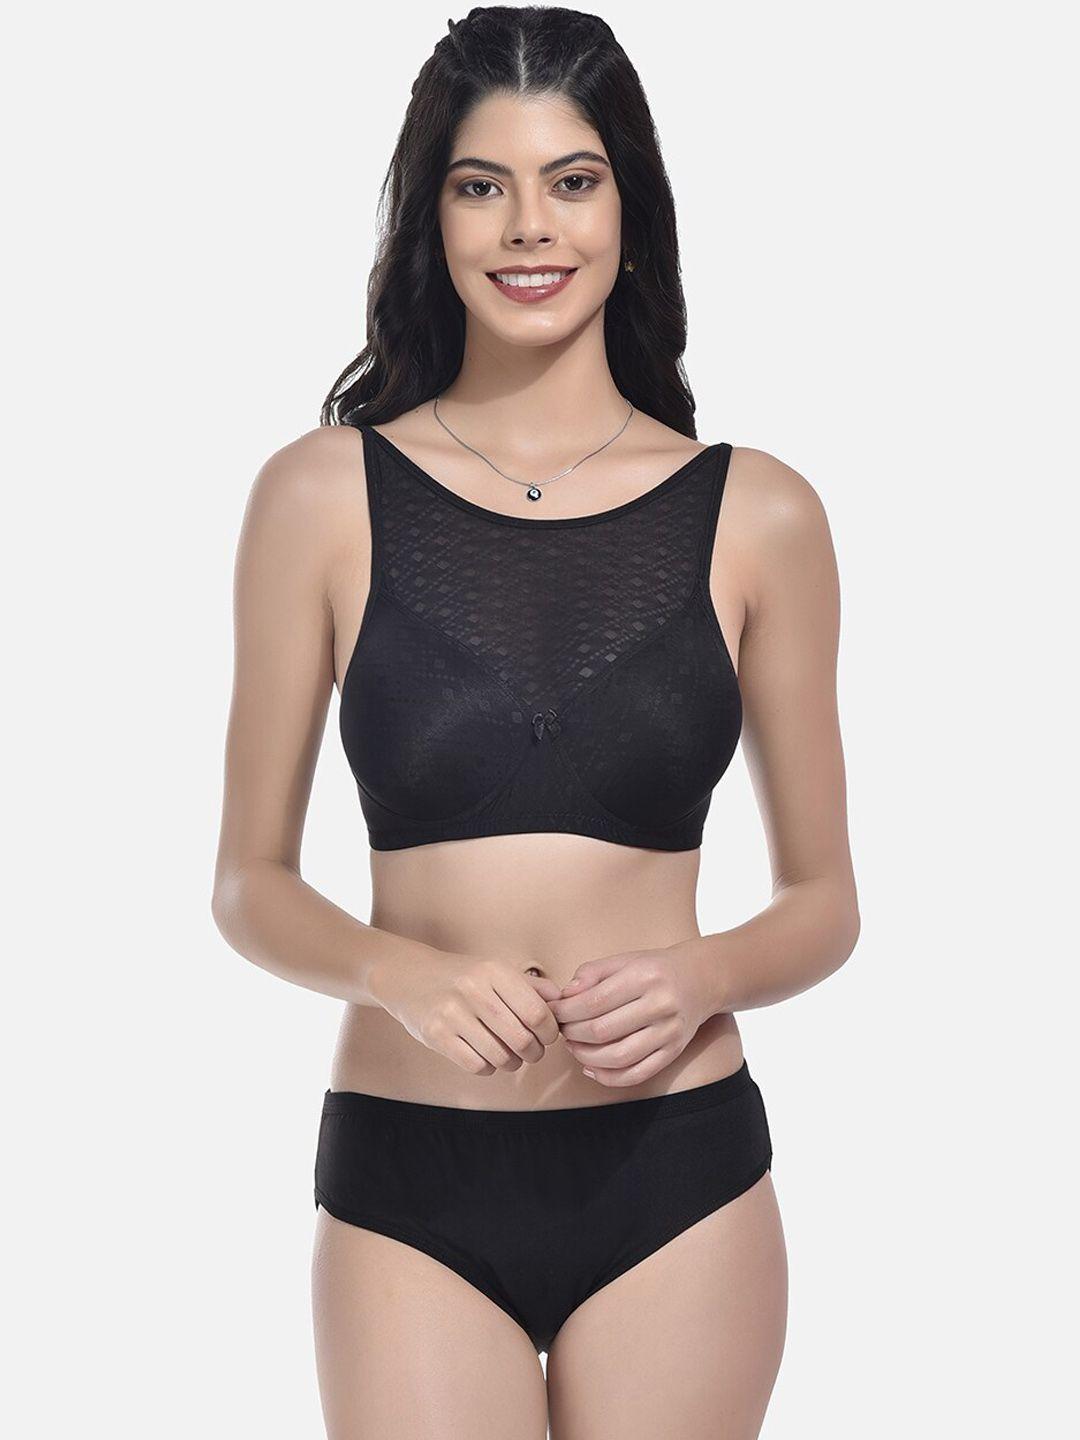 styfun self-design padded lingerie set